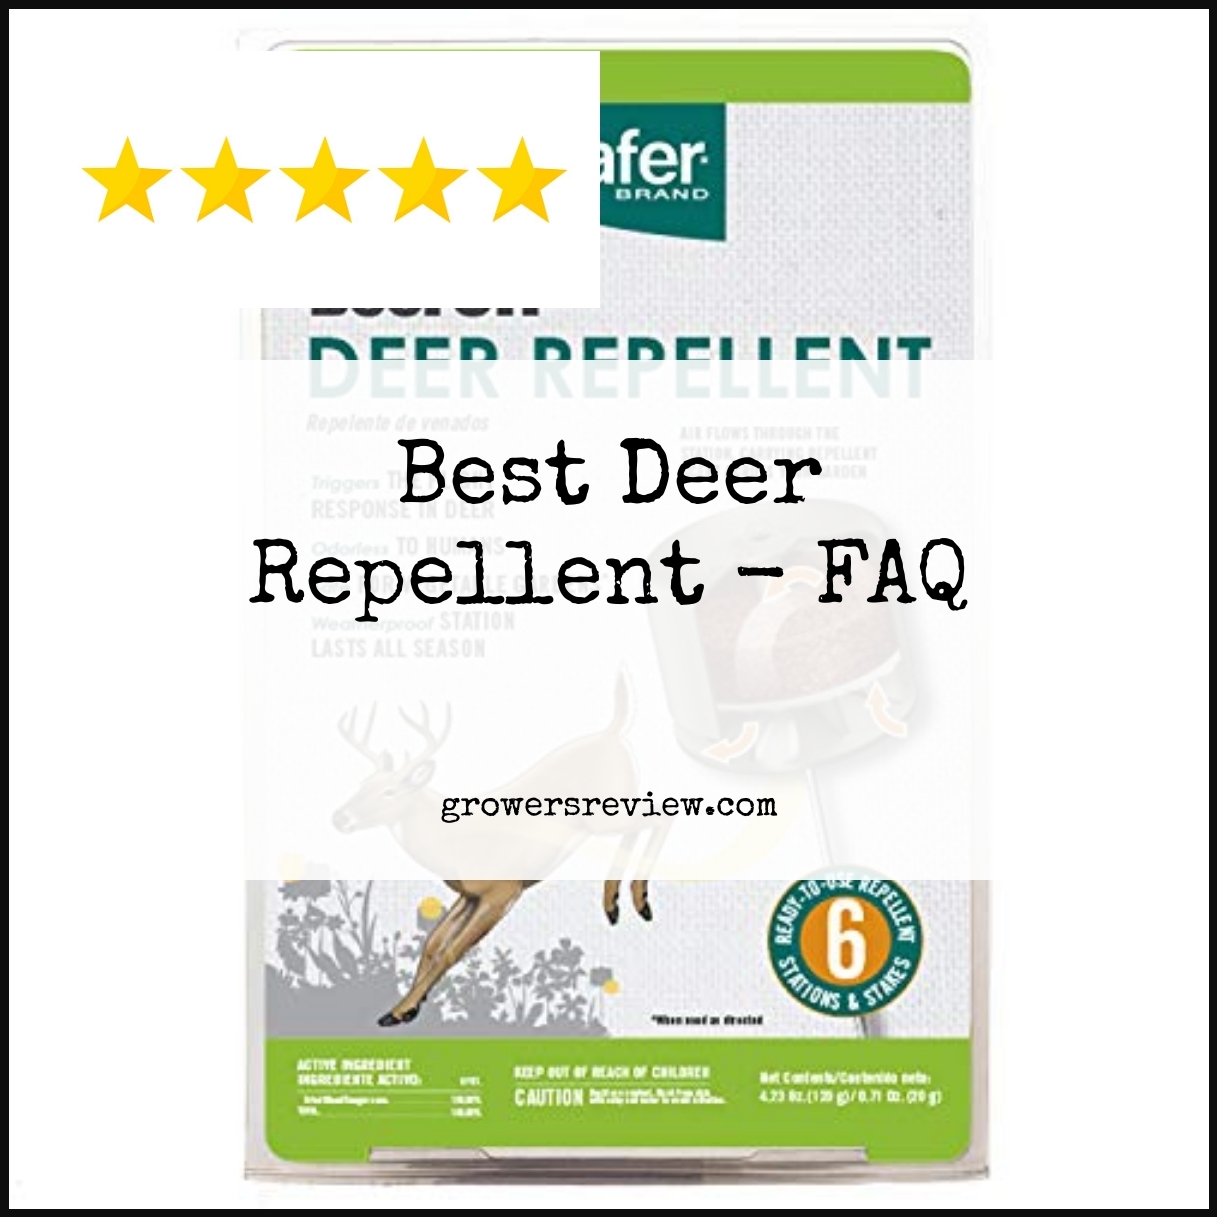 Best Deer Repellent - FAQ